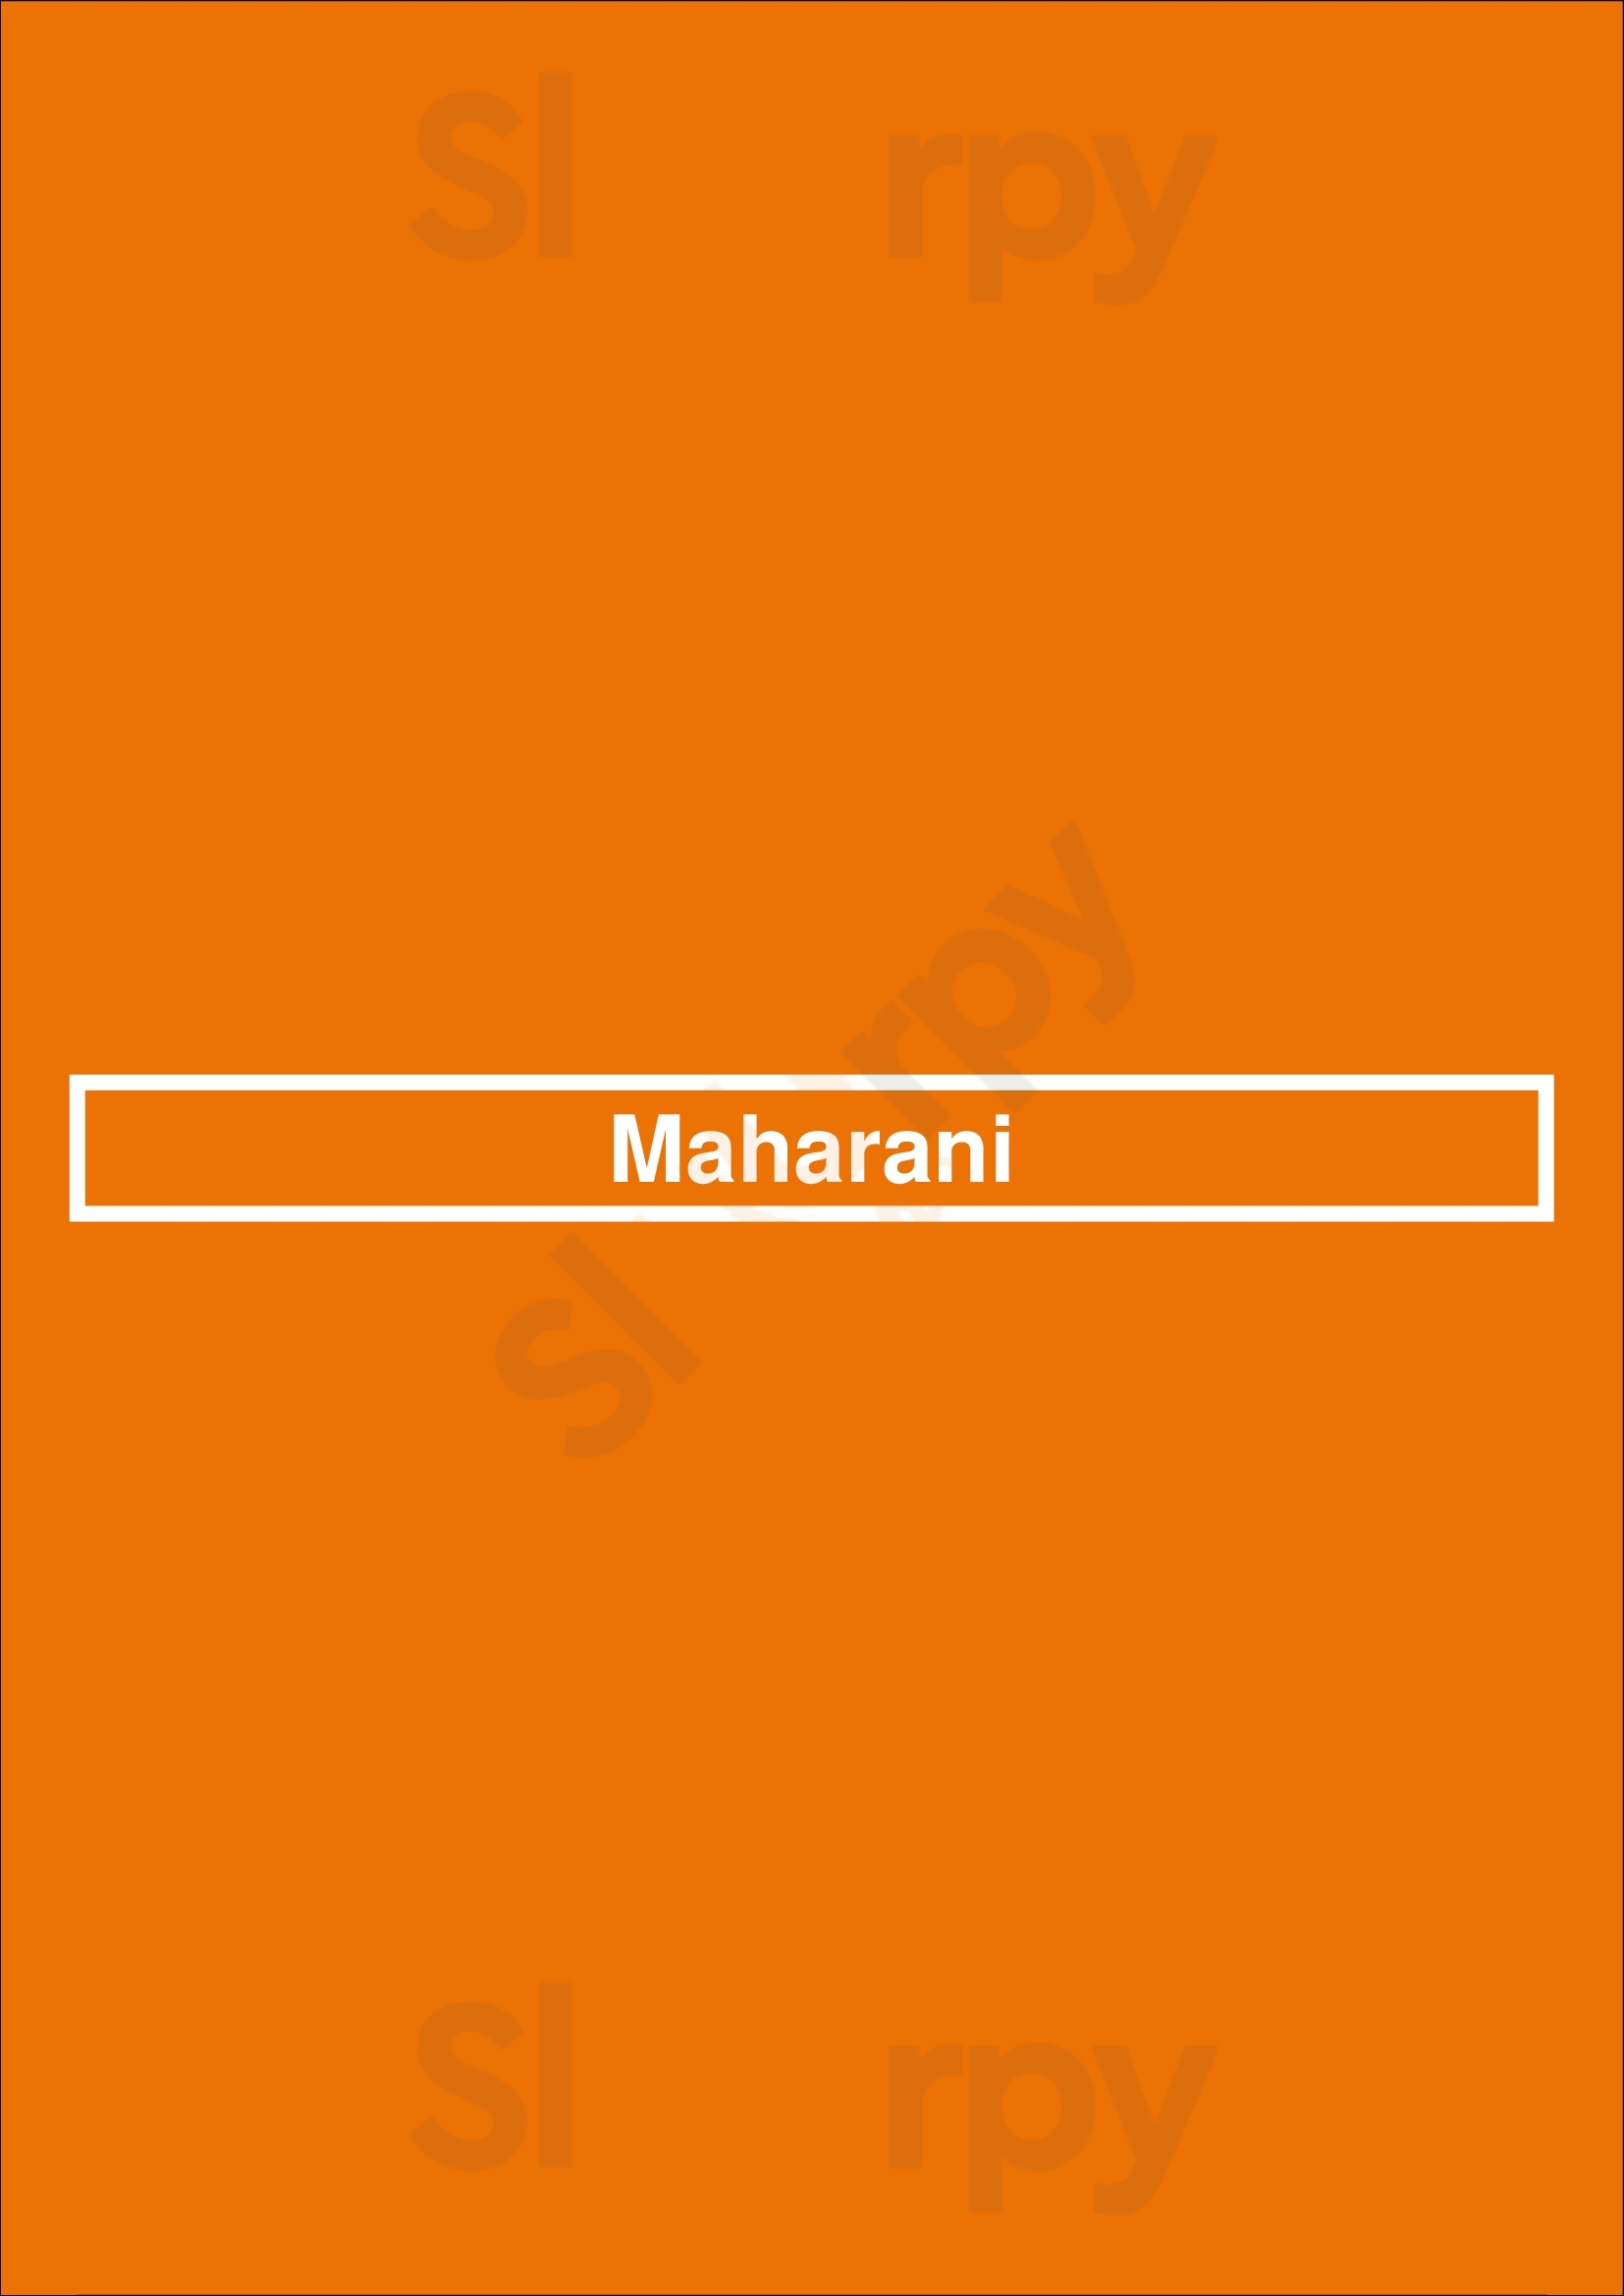 Maharani Houilles Menu - 1